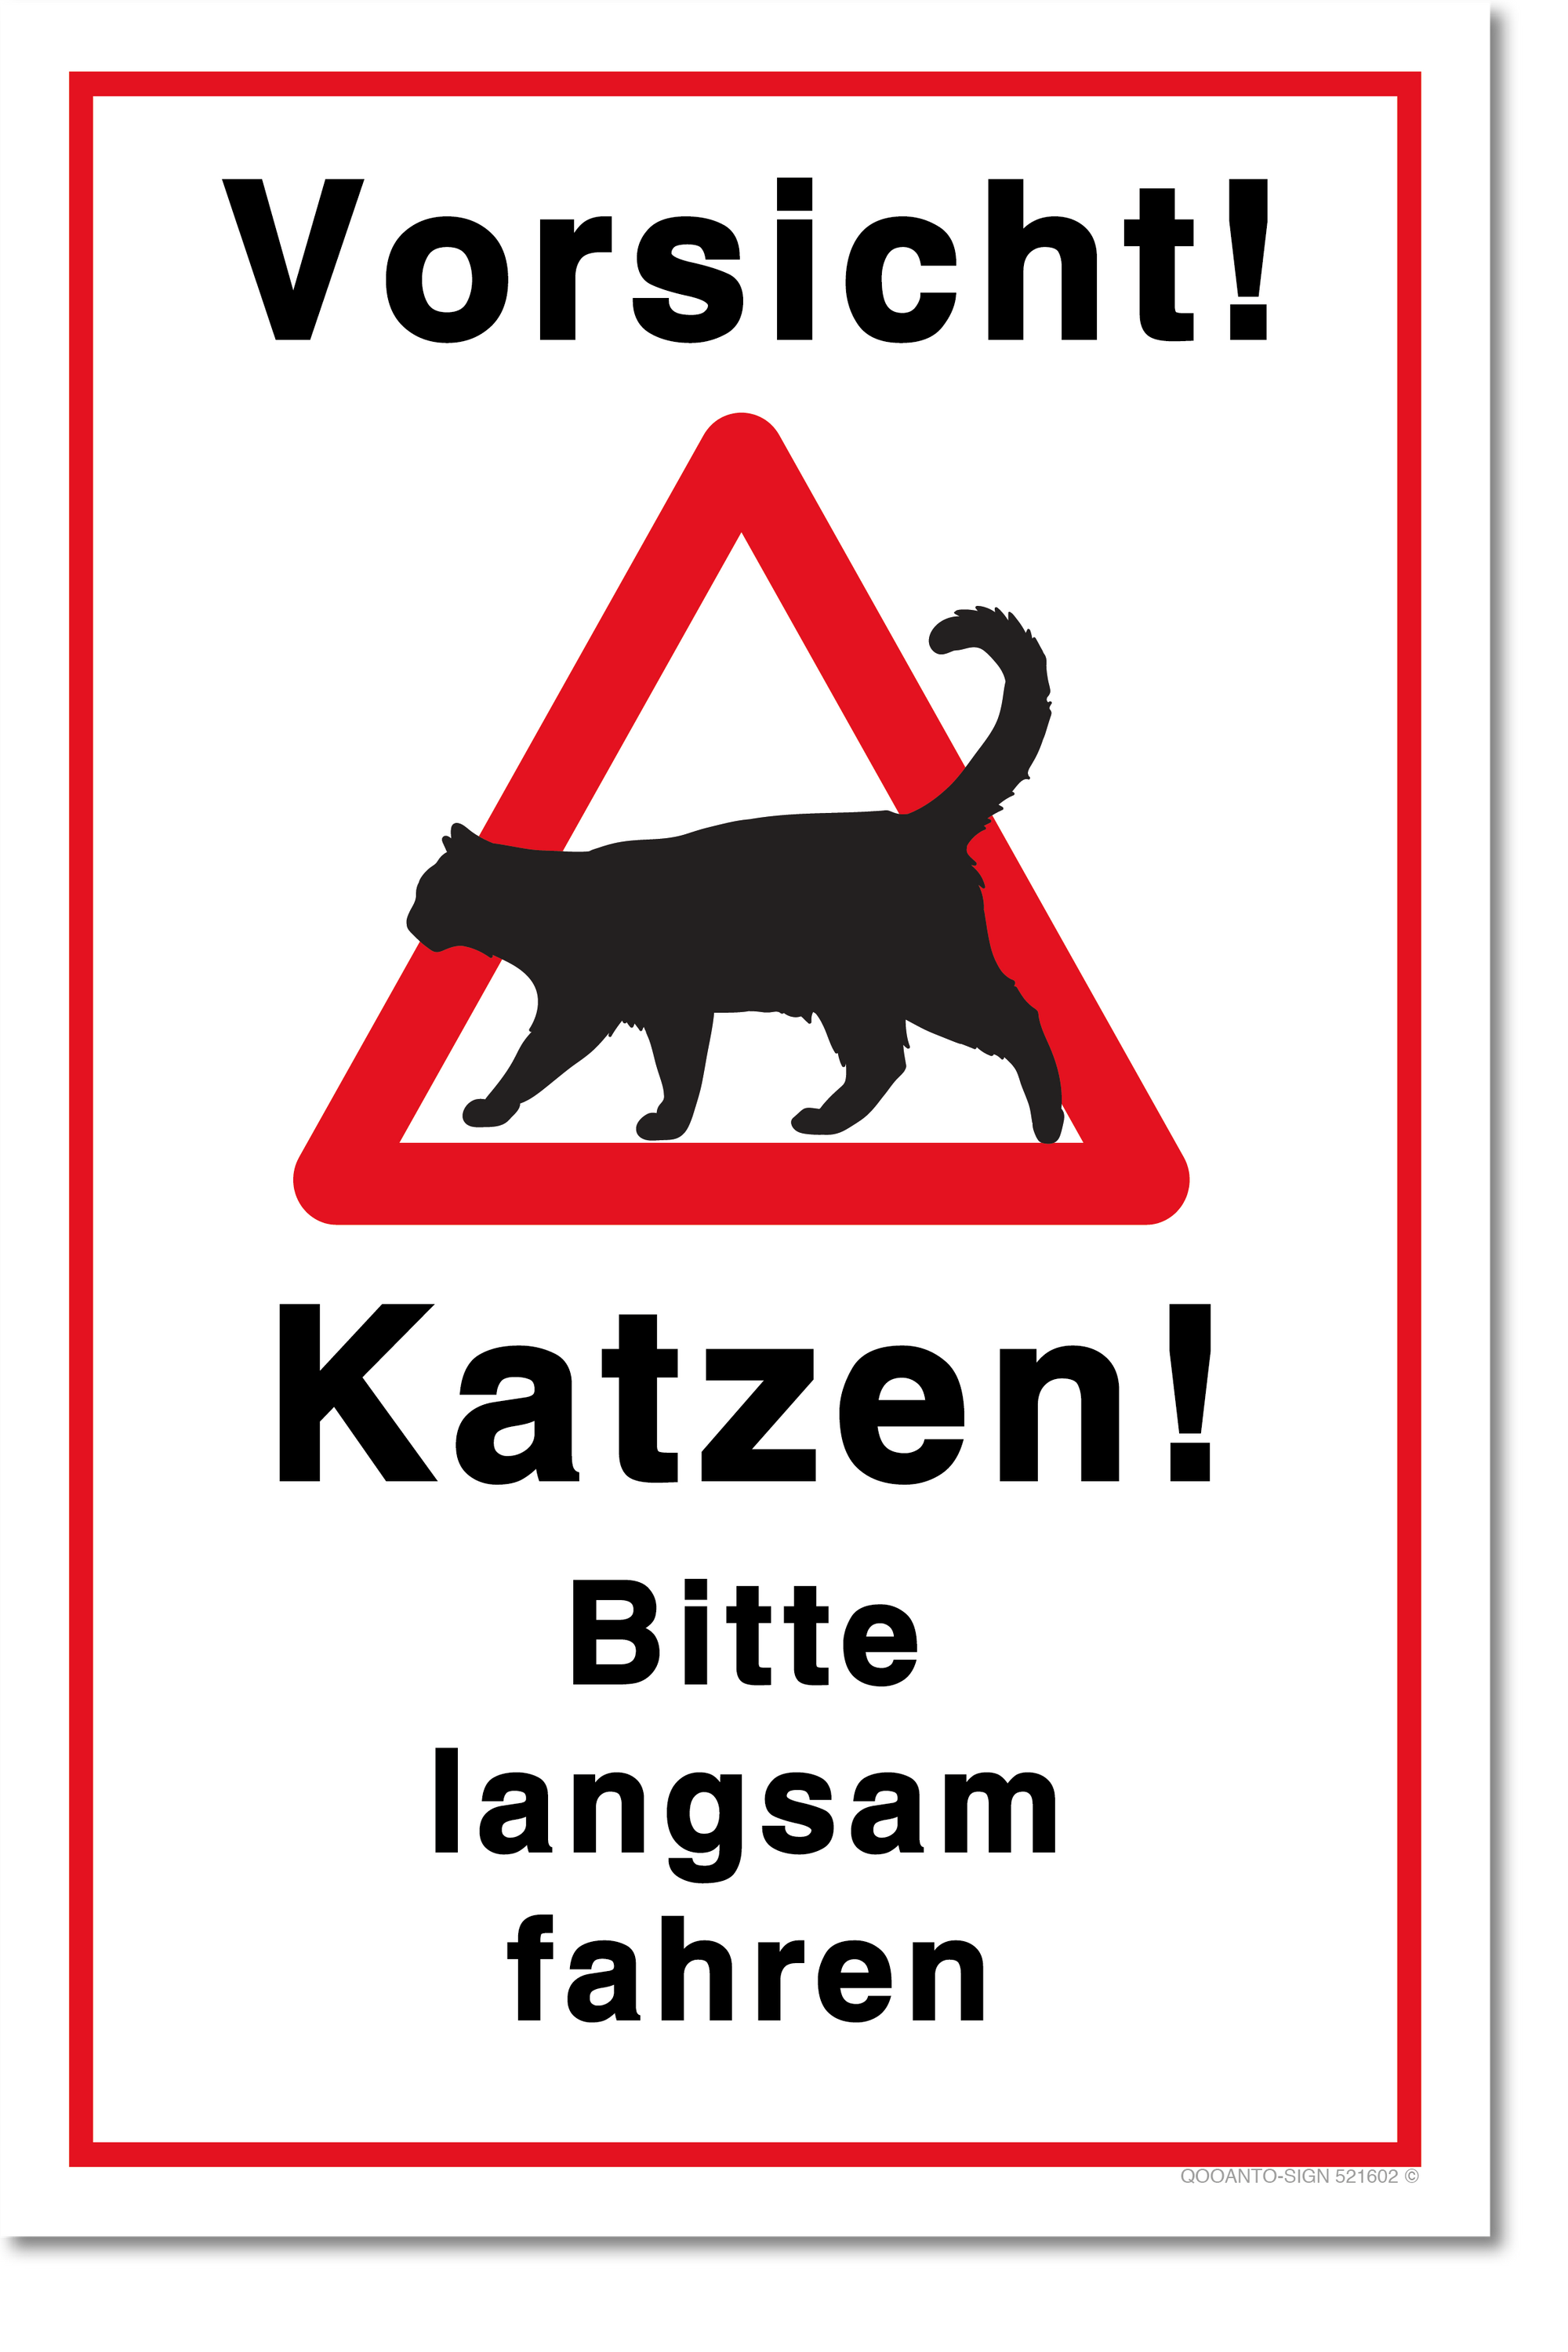 Vorsicht Katzen! Bitte langsam fahren, Katzen Schild, aus Alu-Verbund, mit UV-Schutz